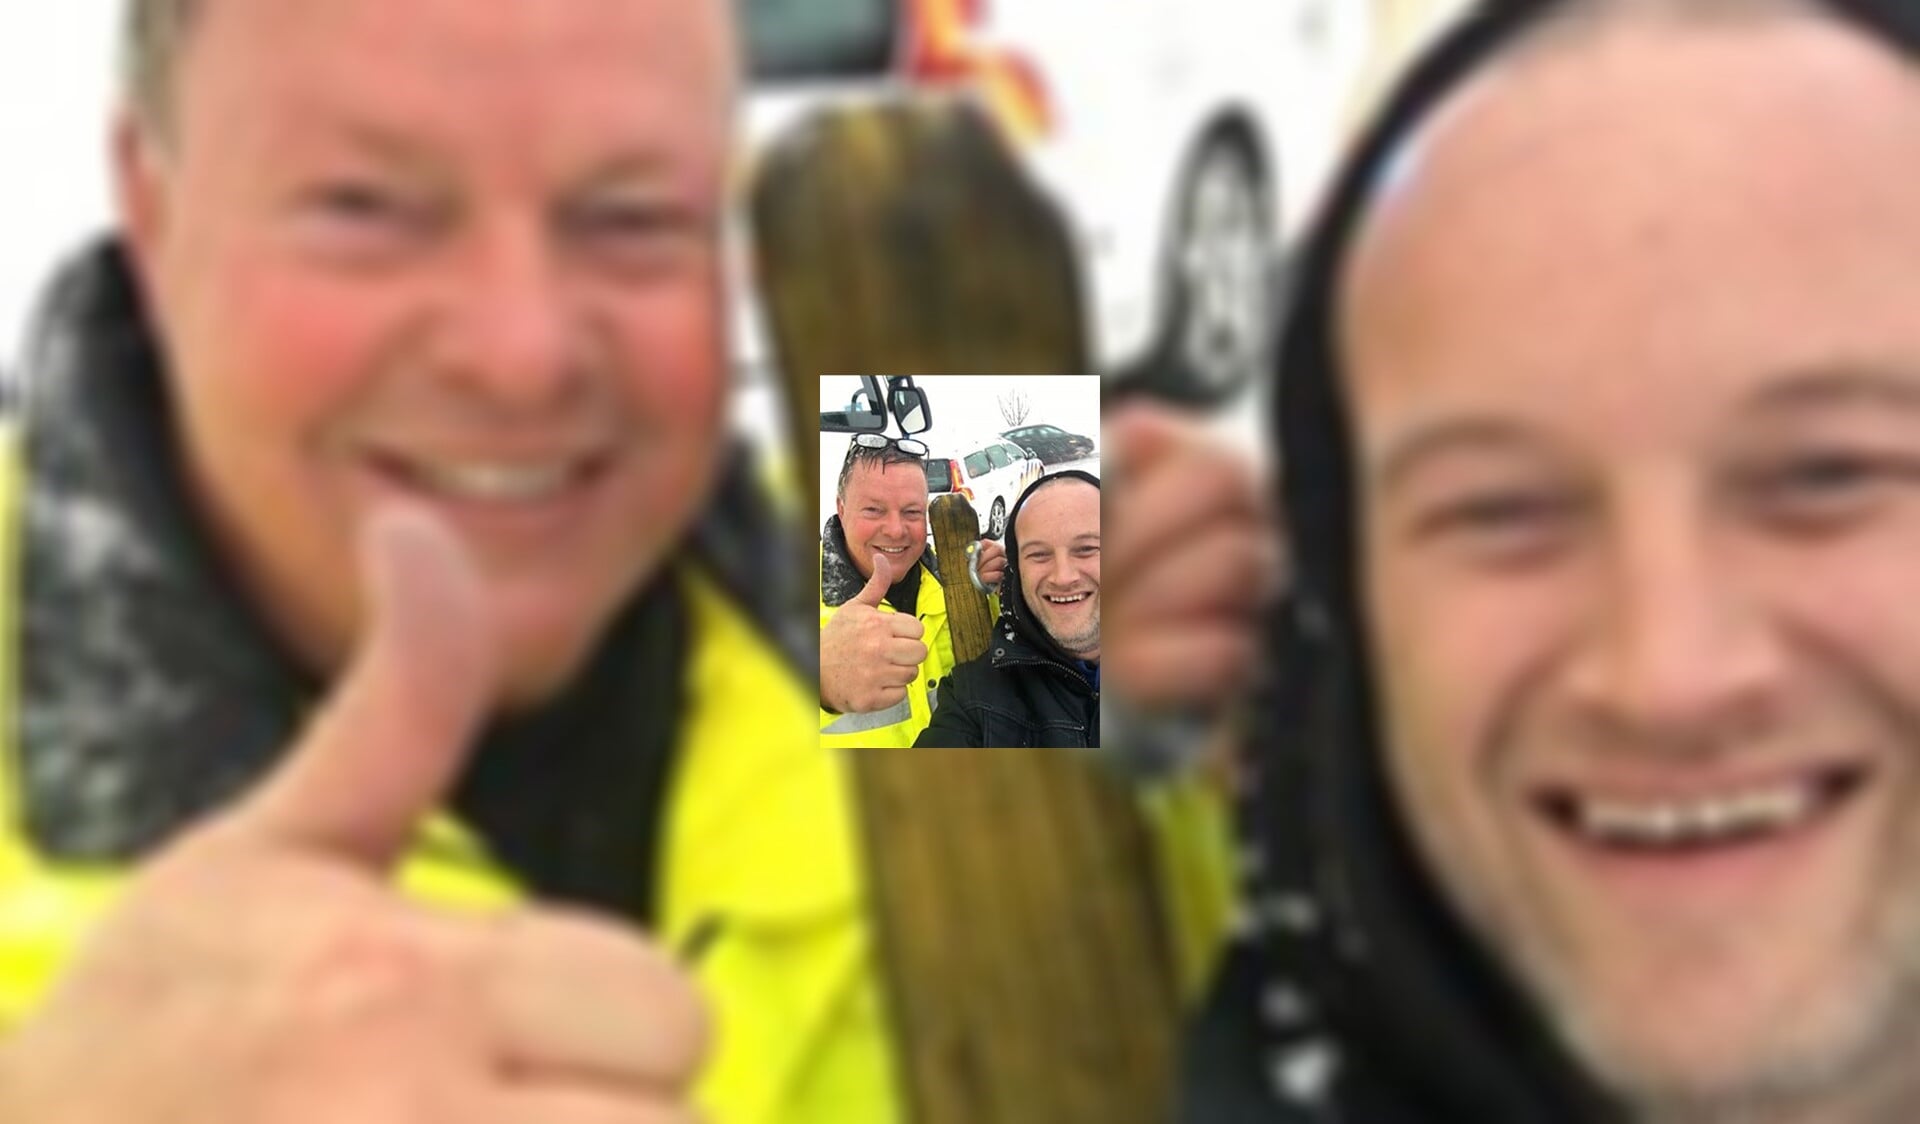 De politieman en de trucker maken een selfie op de goede afloop!